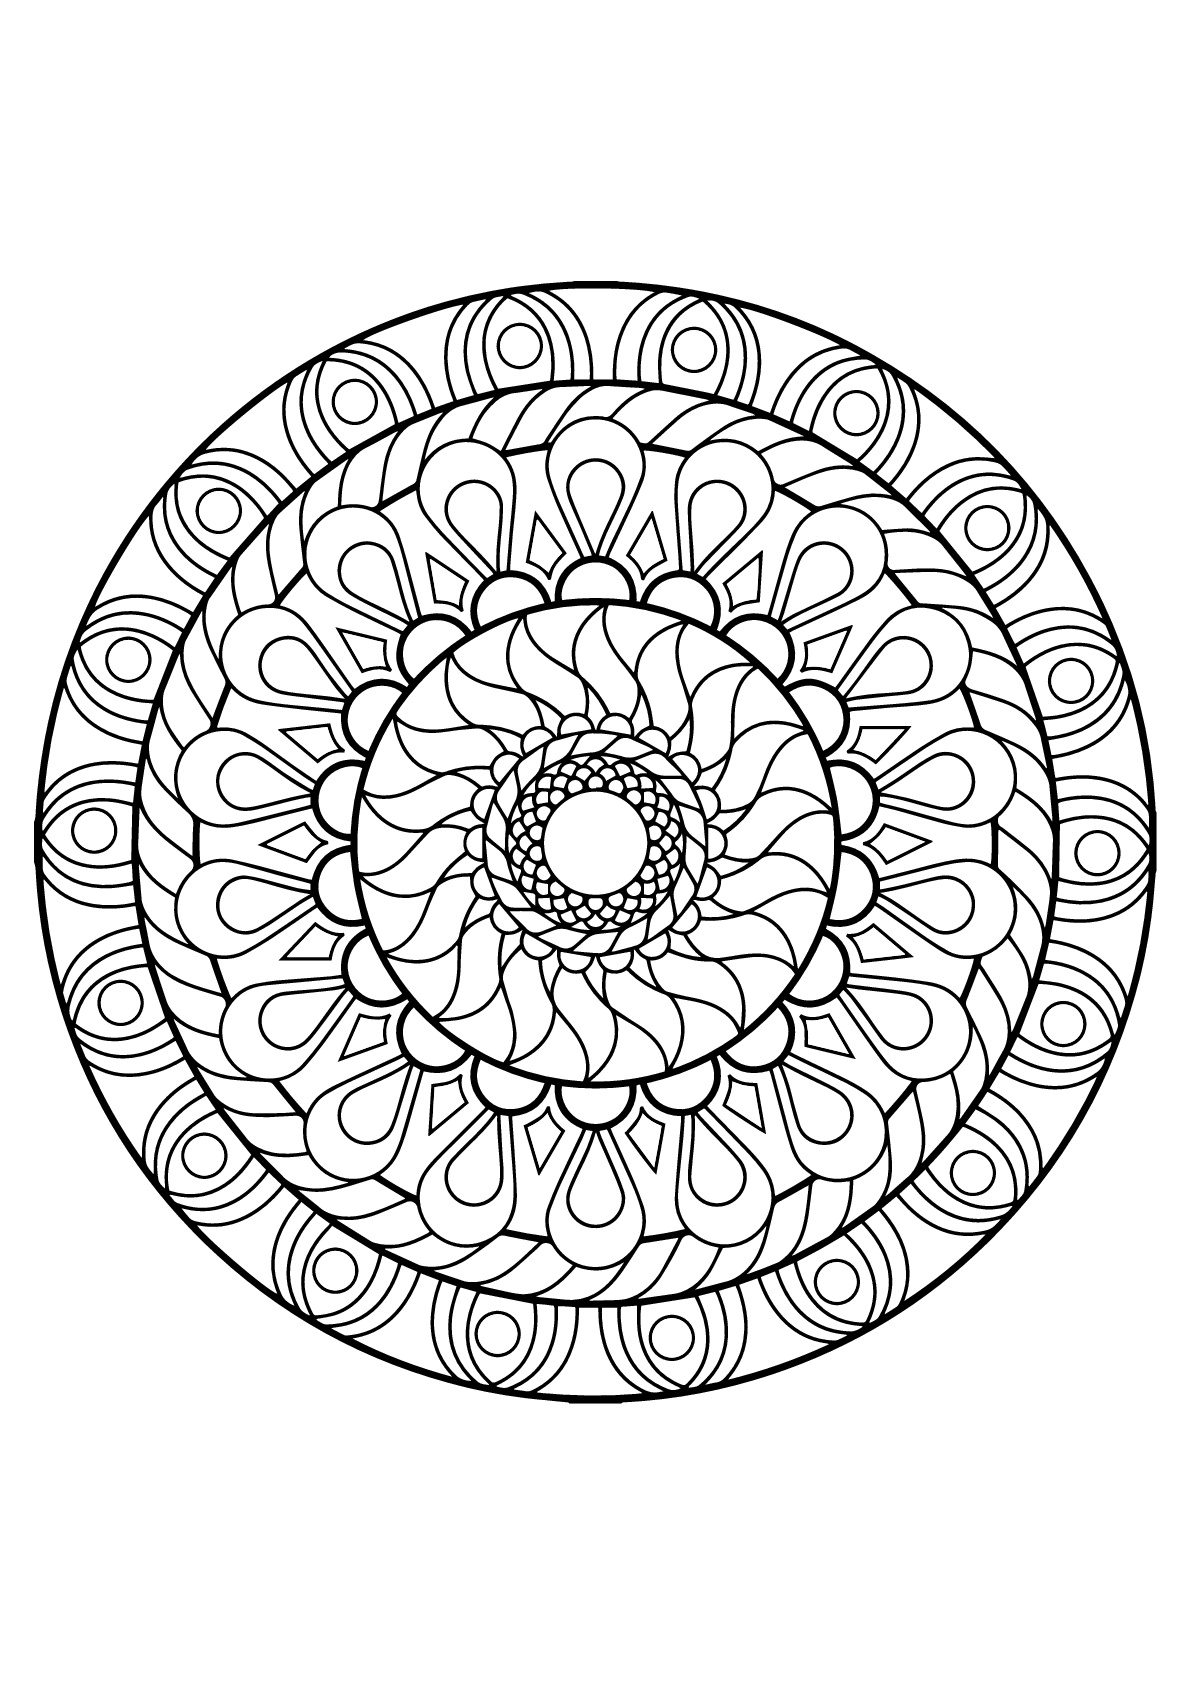 Mandala con varios patrones de Libro para colorear gratis para adultos